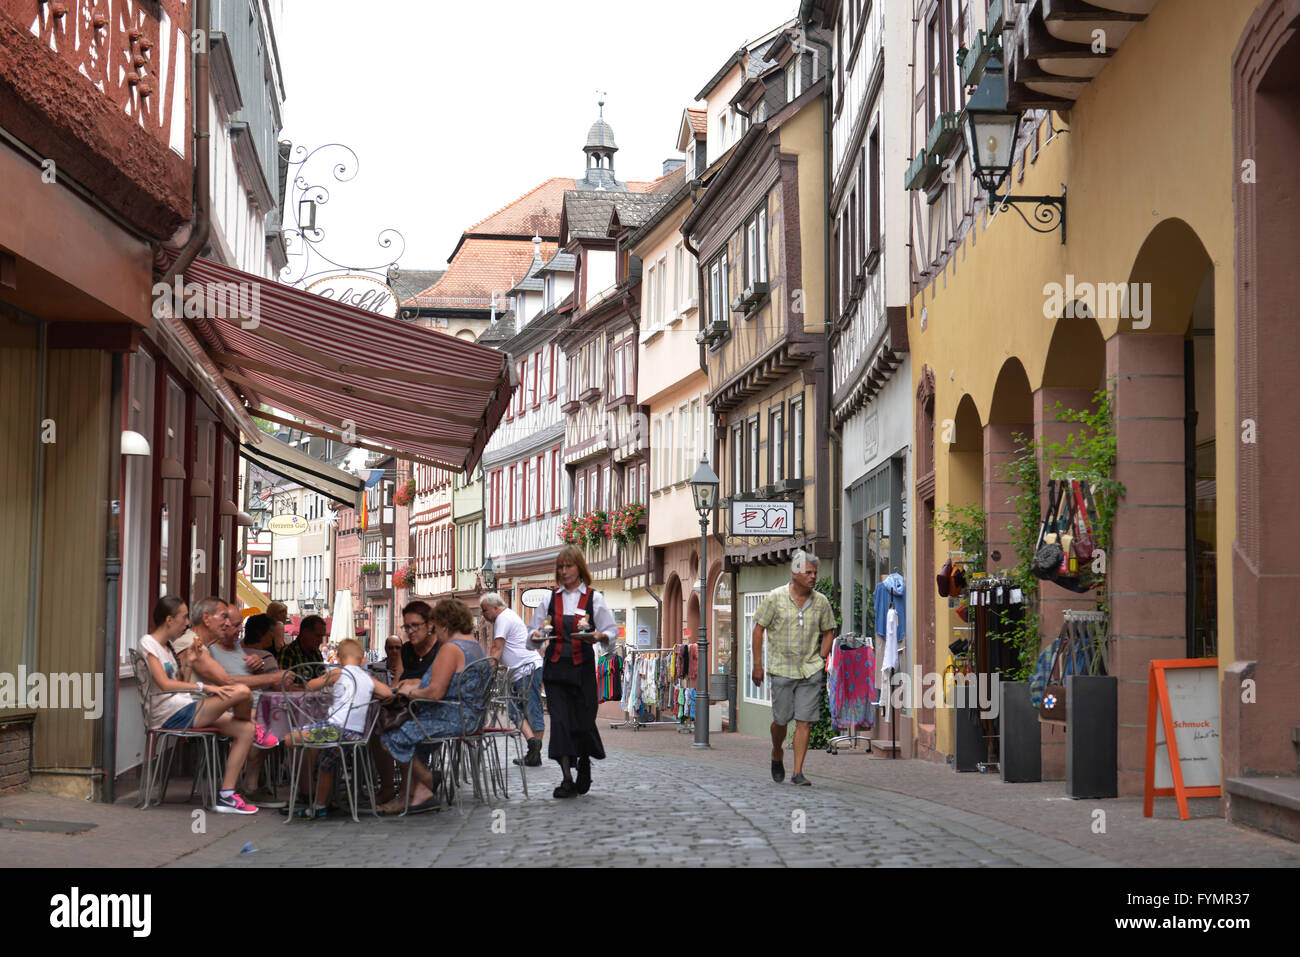 Altstadt, Hauptstrasse, Miltenberg, Bayern, Deutschland Stock Photo